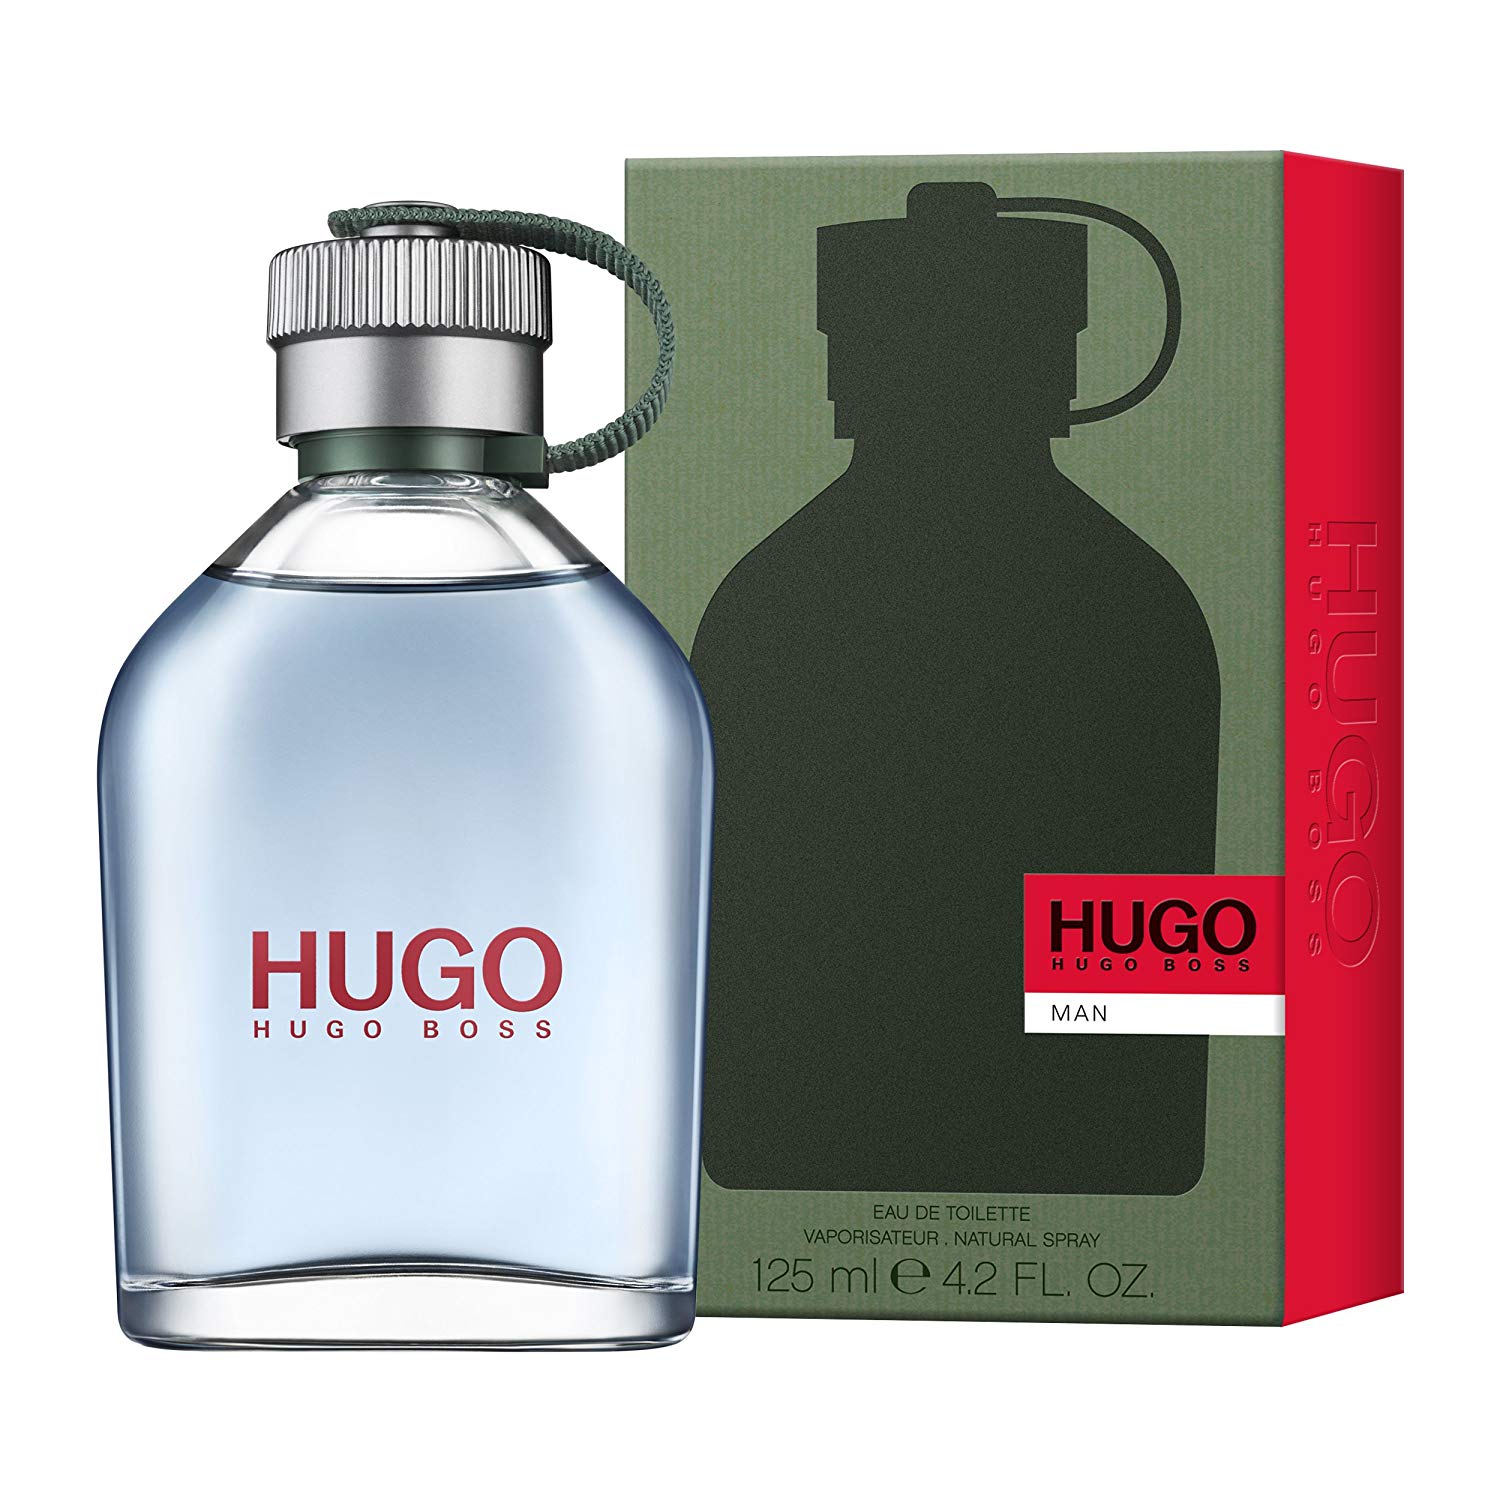 hugo boss perfume price in uk